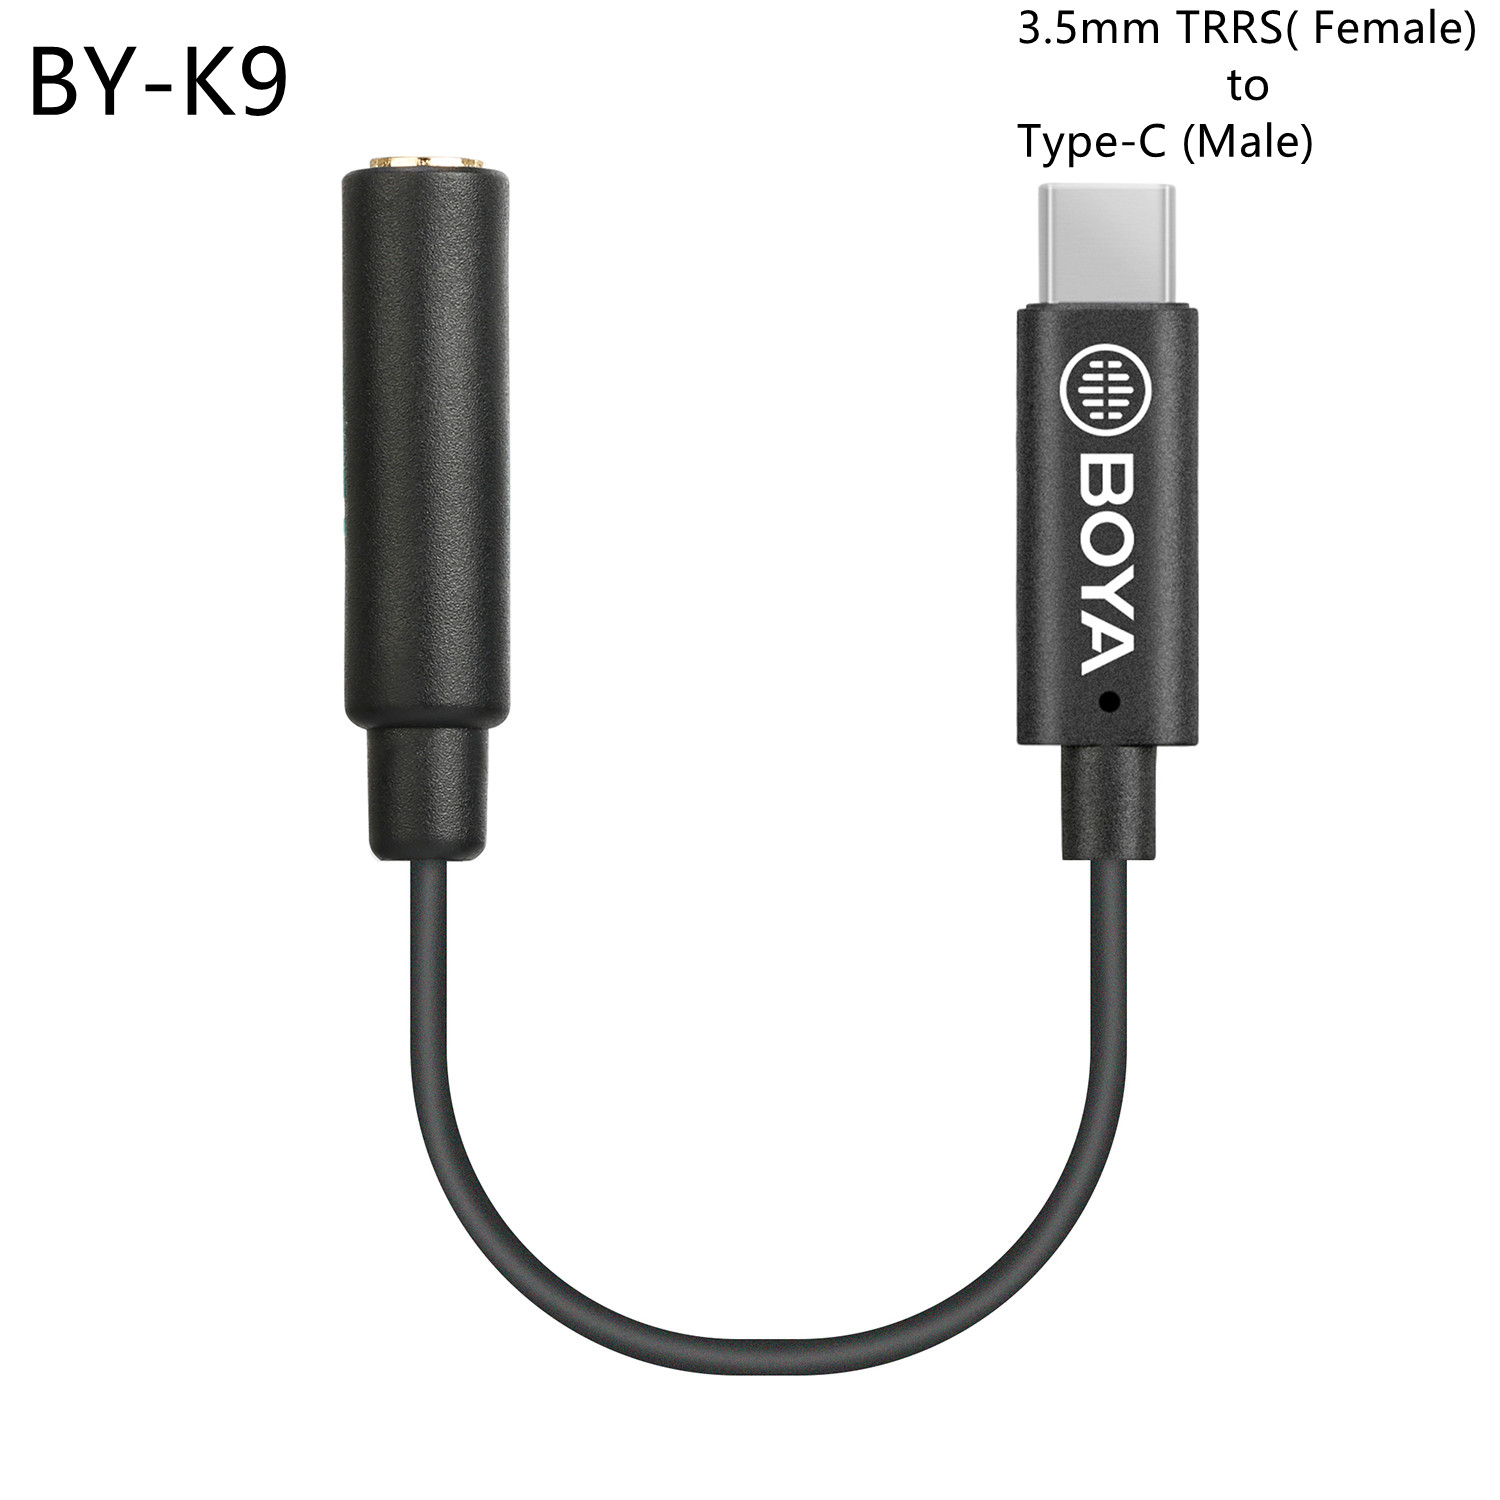 Boya BY-K9 Audio Adapter Kabel Microfoon Verlengkabel 3.5 Mm Trrs (Vrouwelijke) naar Type-C (Mannelijke) Voor BY-M1 BY-M1DM BY-M1PRO